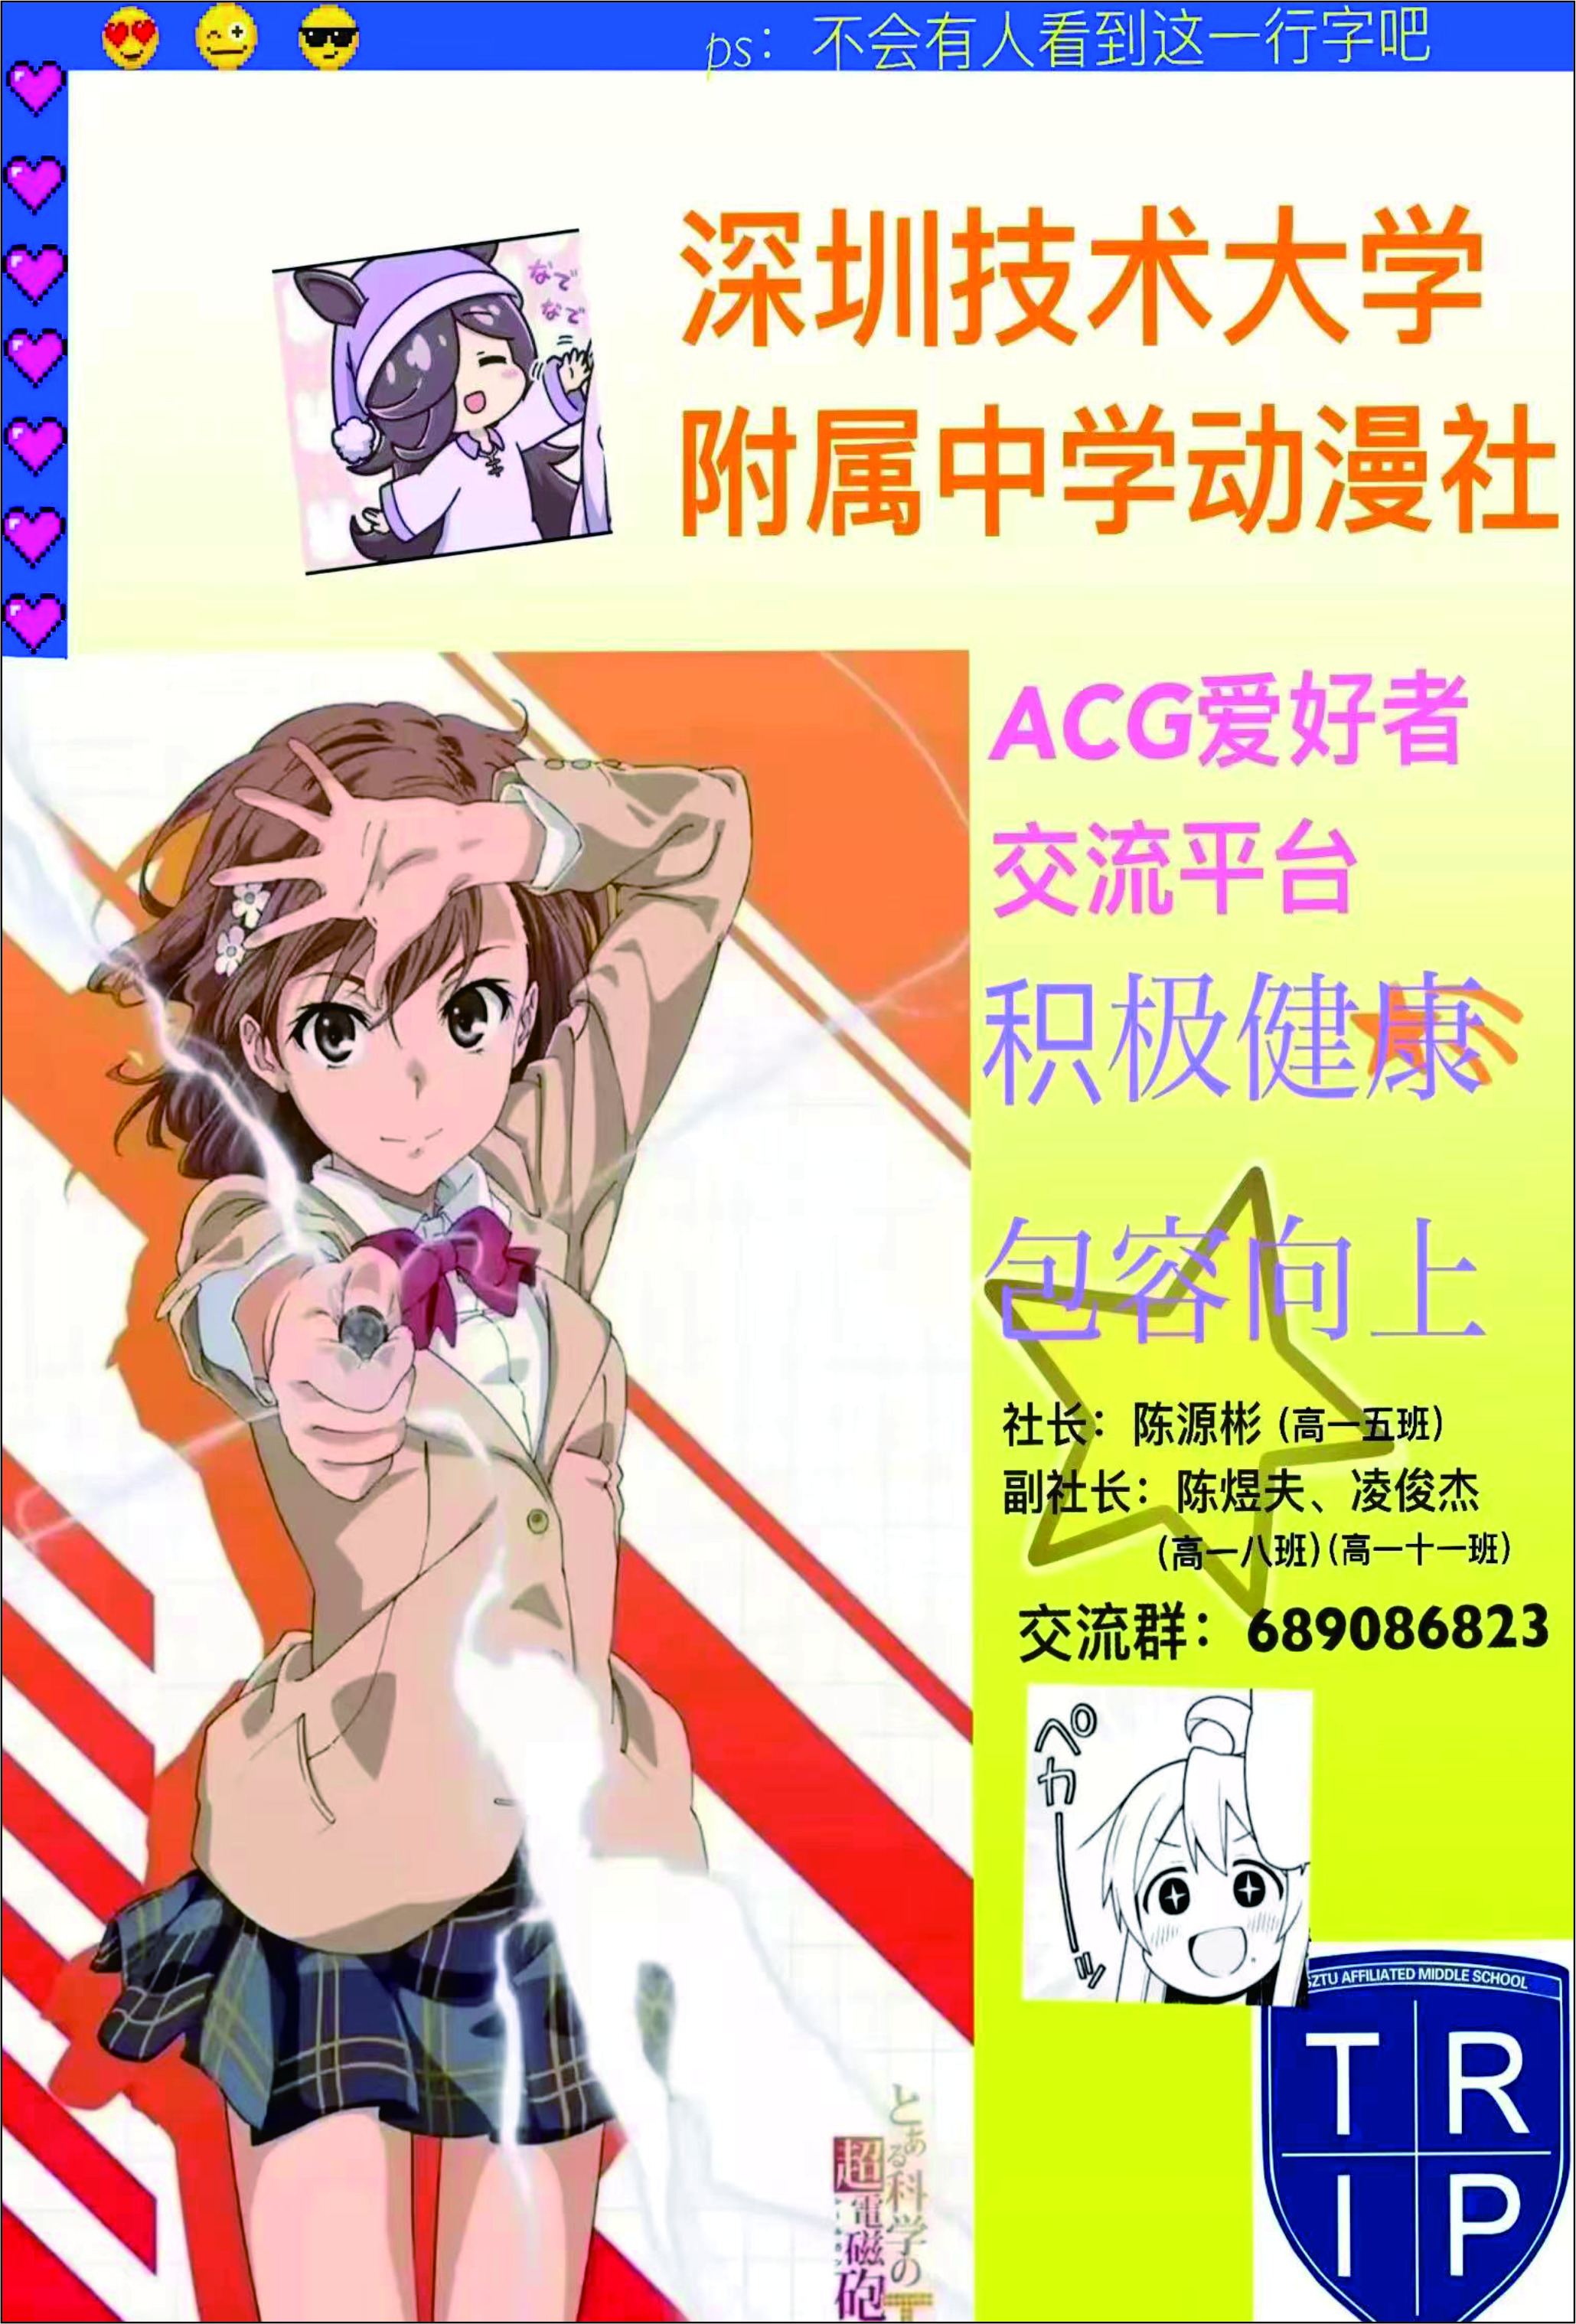 深技大附中/平冈中学动漫社宣传海报